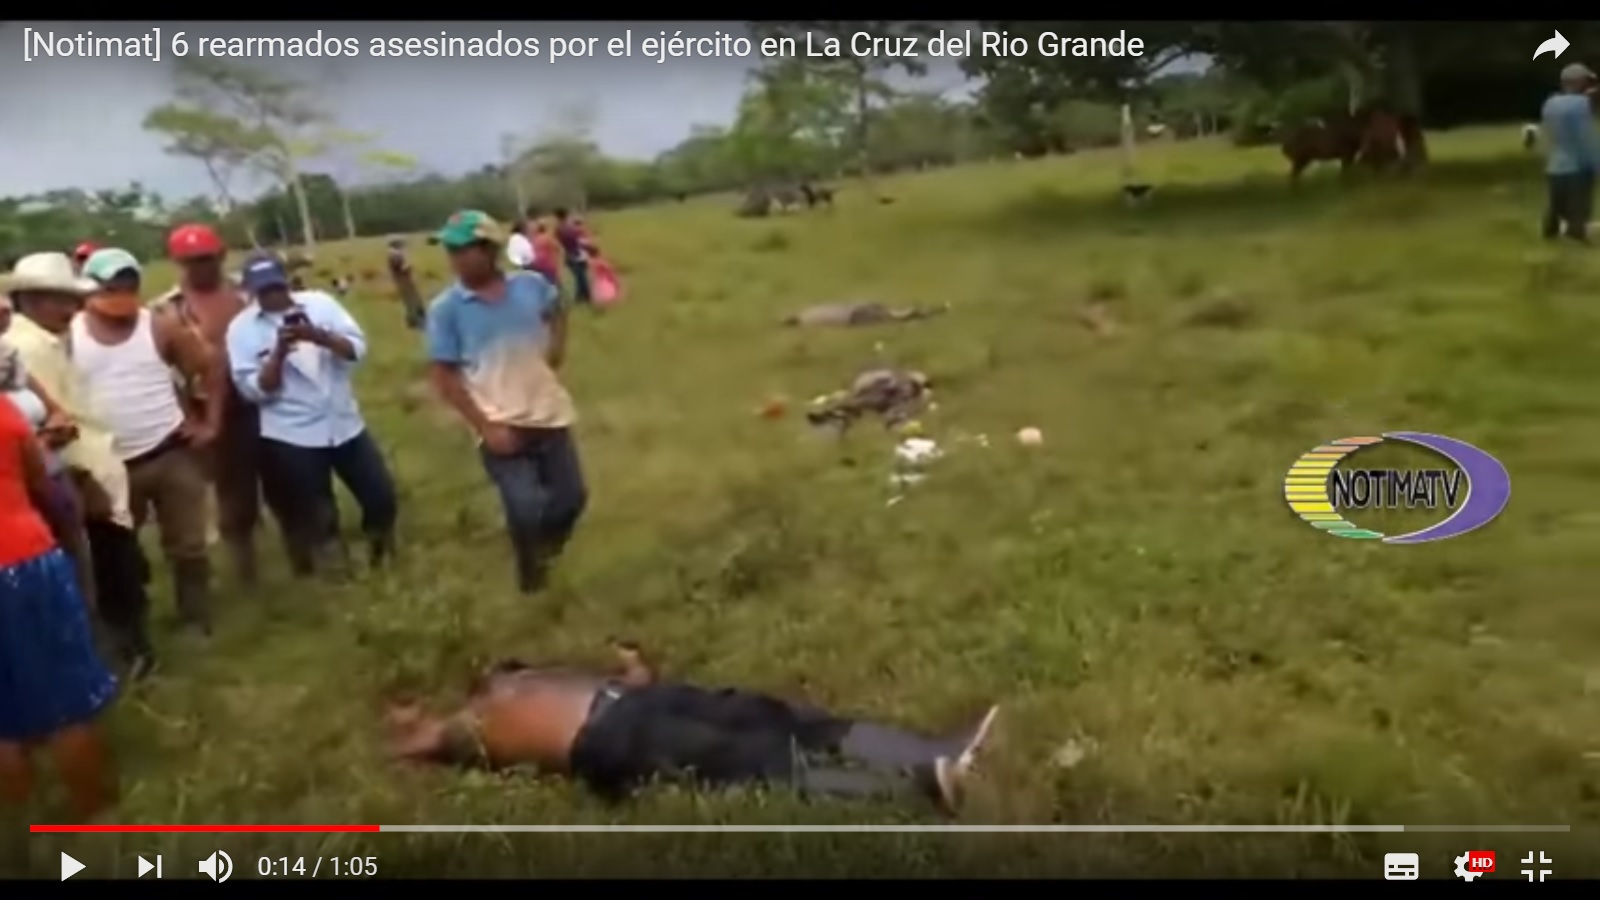 Exhumarán a rearmados masacrados en La Cruz de Río Grande